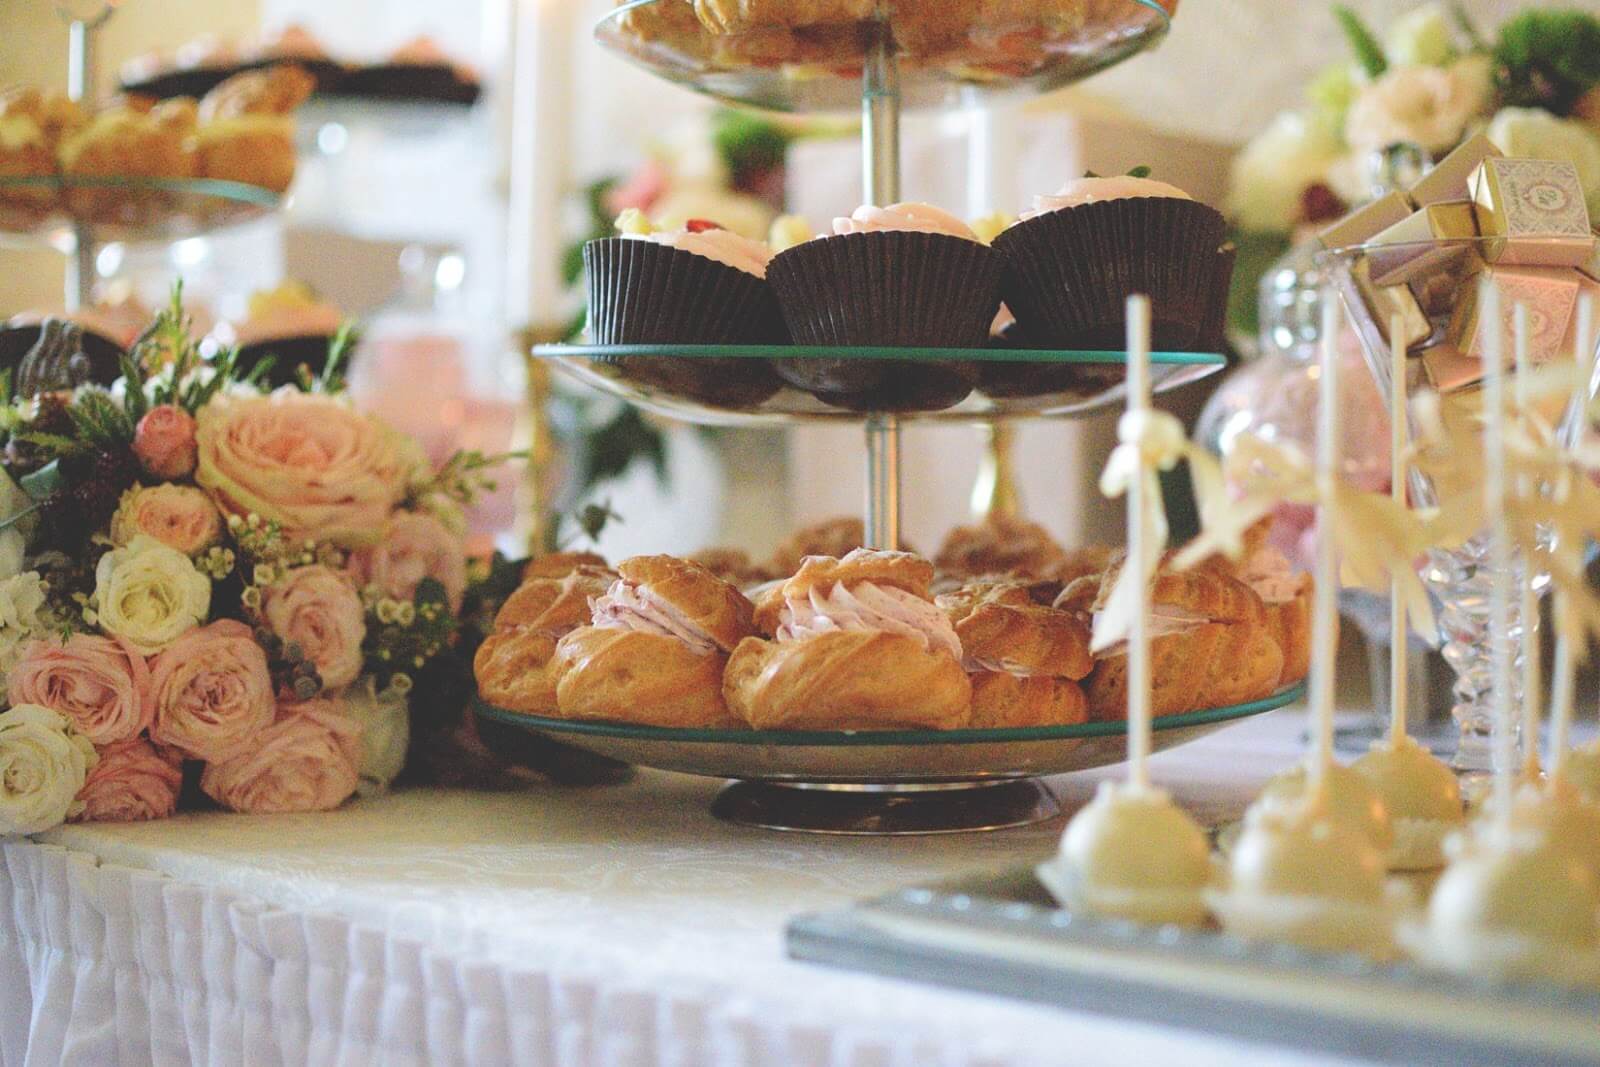 tea house austin: pastries